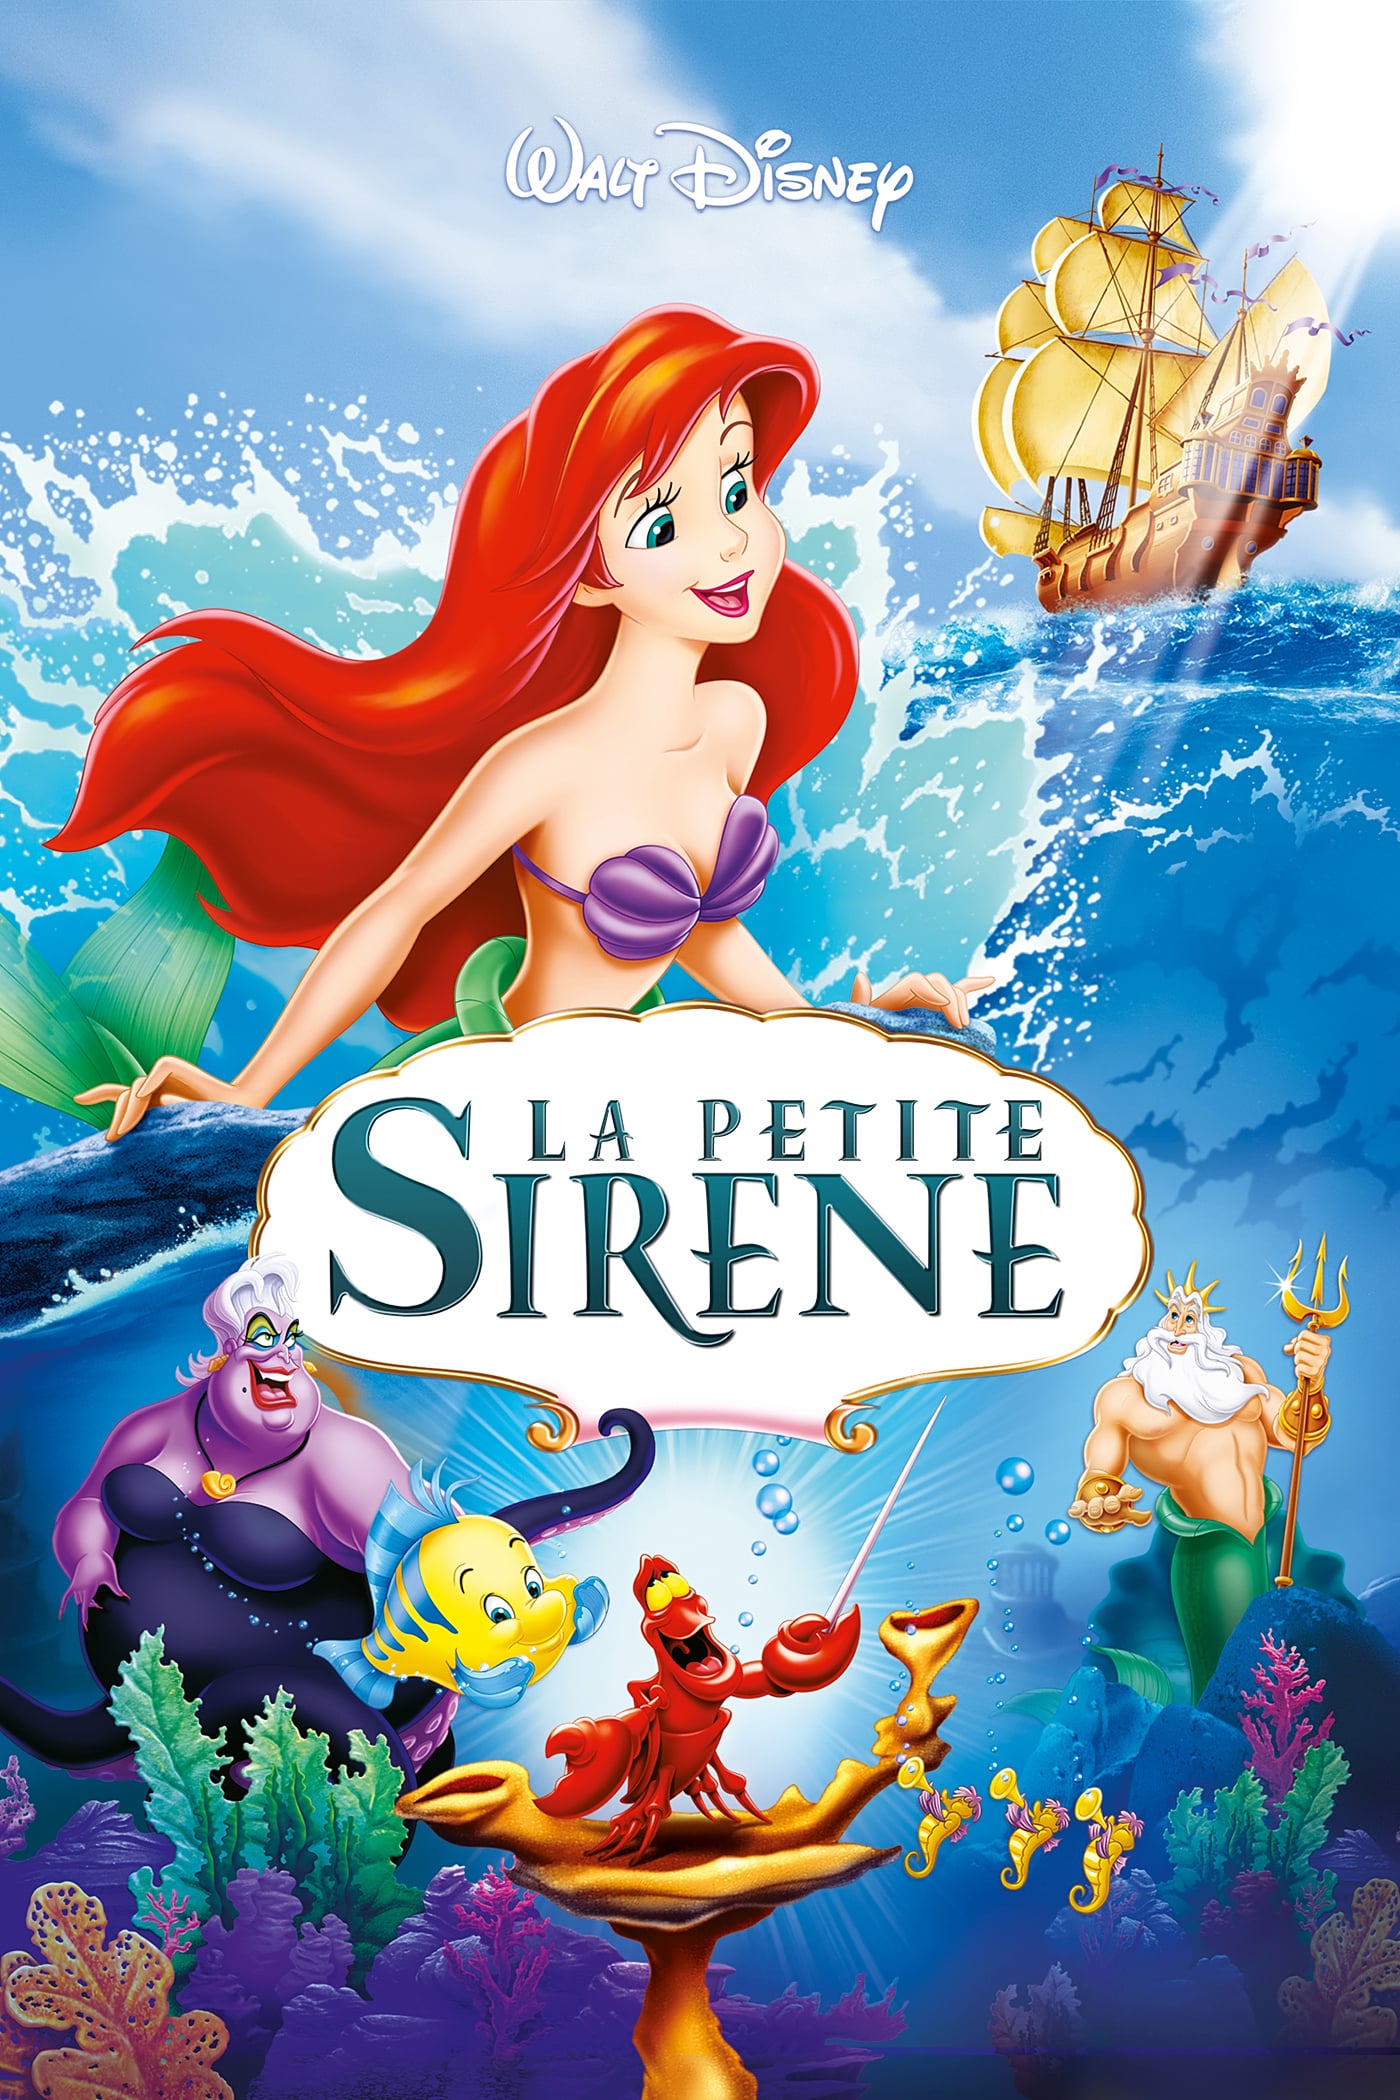 La Petite Sirene Film Disney 2021 La Petite Sirène (film)- Réalisateurs, Acteurs, Actualités